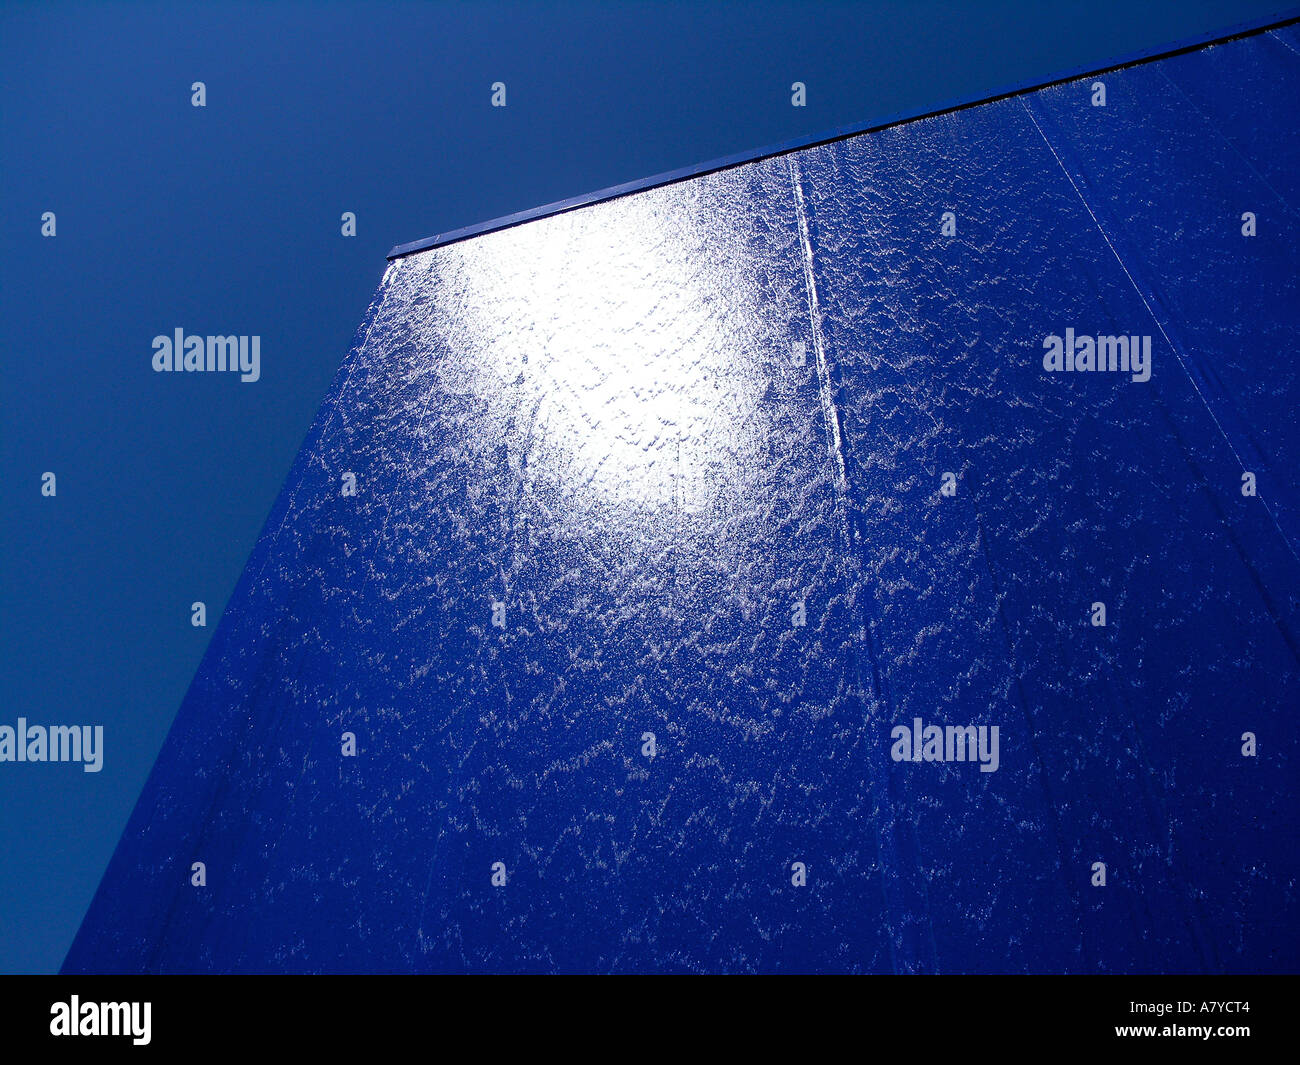 Wasser an der Oberfläche des Gebäudes in blau lackierten Metallplatten abgedeckt Stockfoto